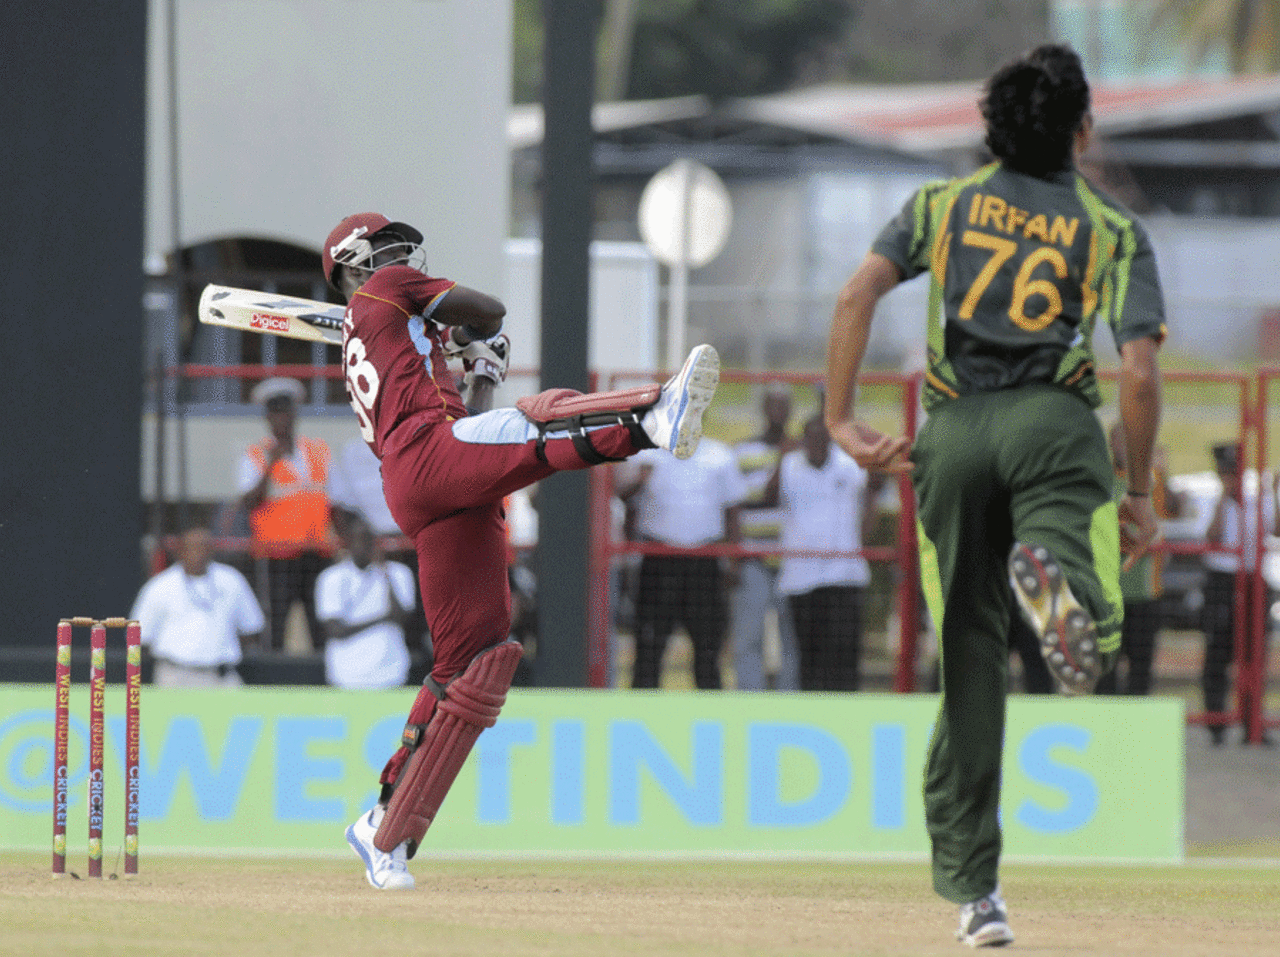 Darren Sammy tonks one over midwicket, West Indies v Pakistan, 1st T20I, St Vincent, July 27, 2013